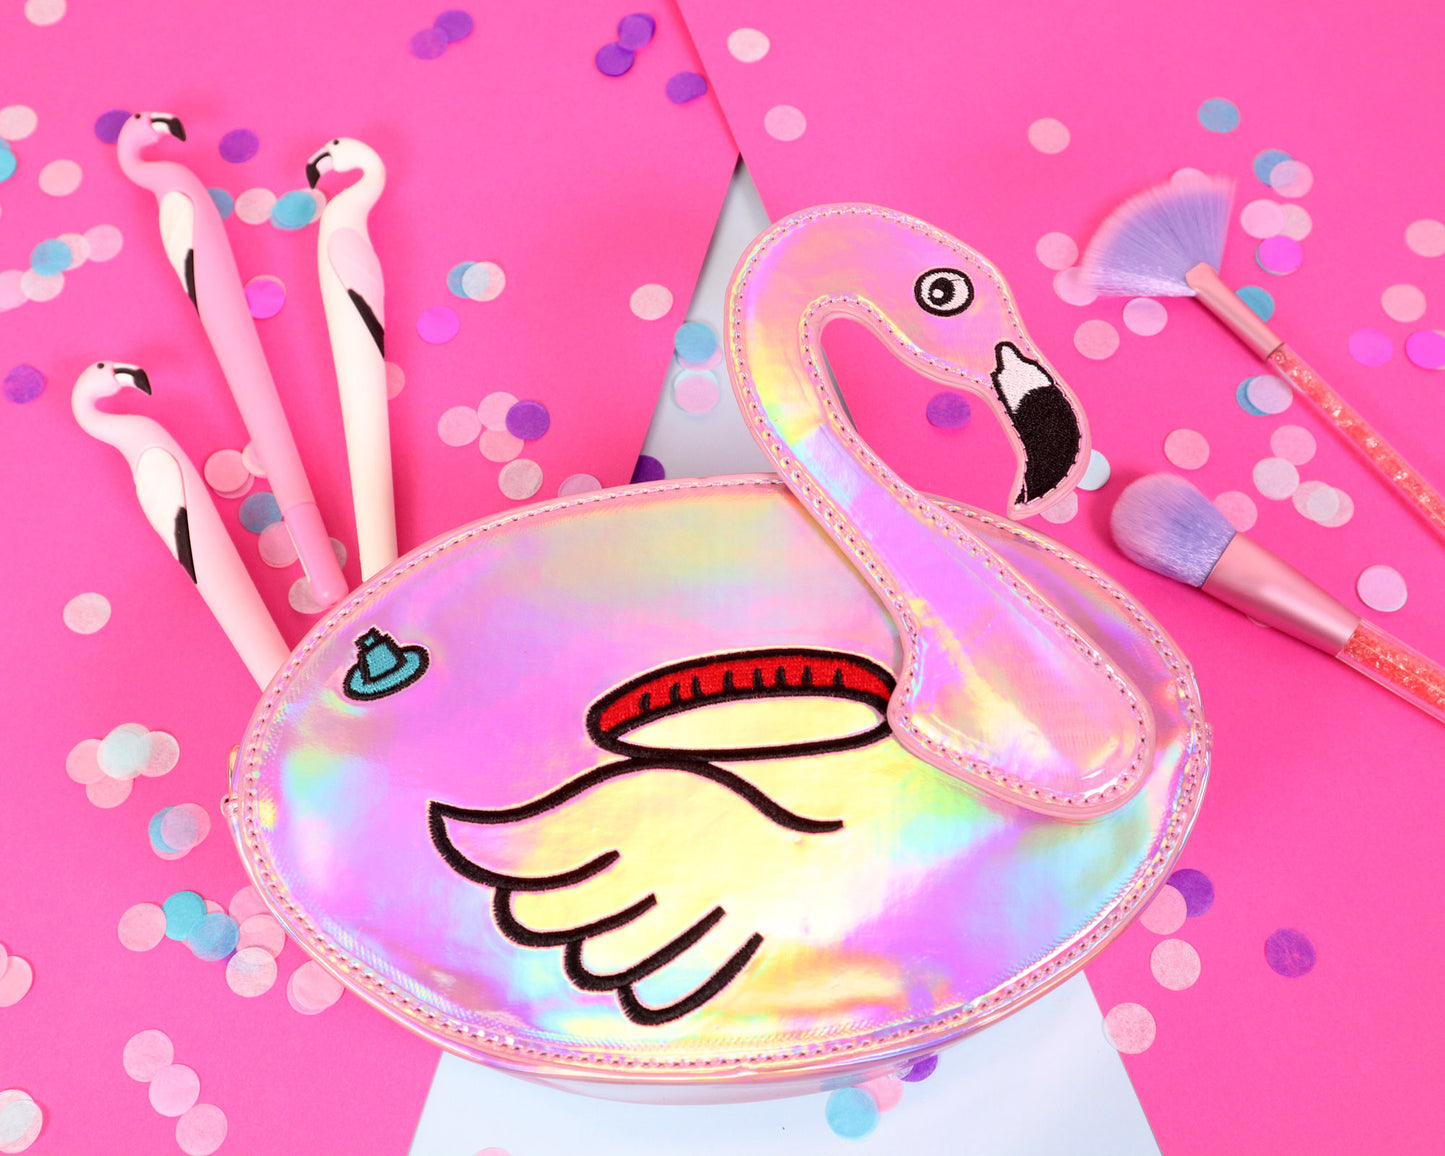 Fun Flamingo Floaty Party Handbag - Bewaltz